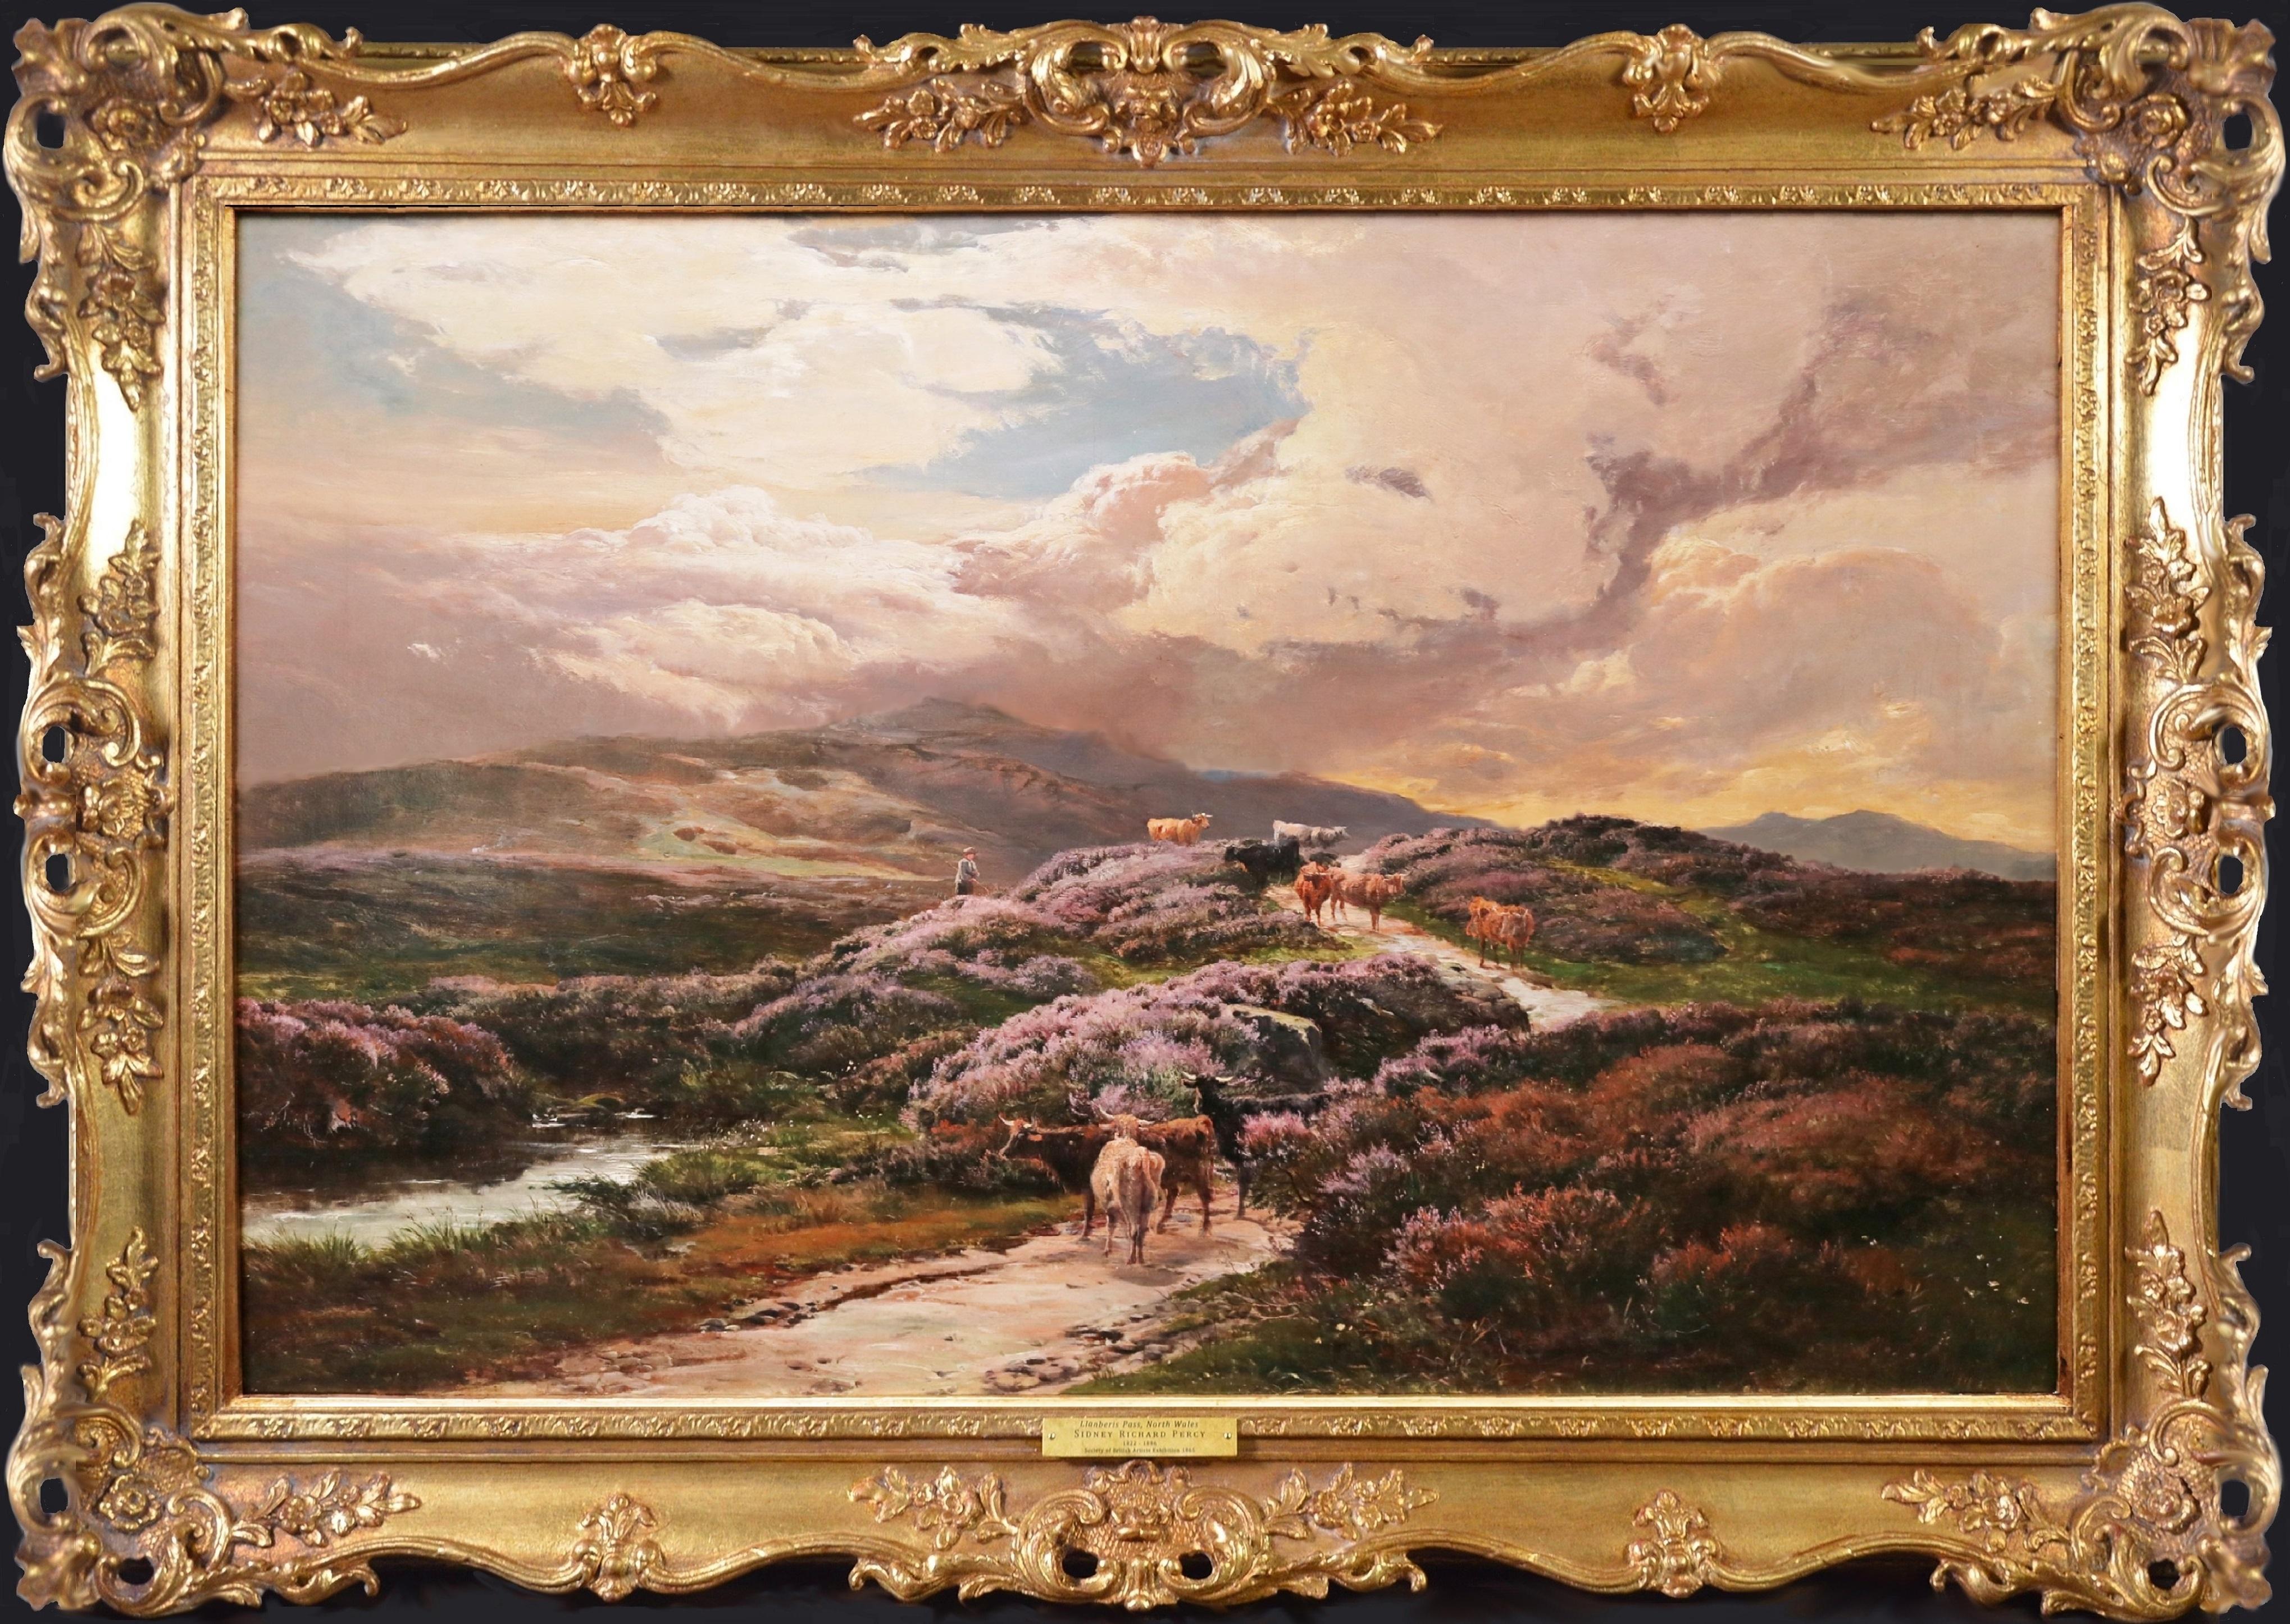 Moel Siabod - Peinture à l'huile du 19e siècle représentant la Snowdonia, au nord du Pays de Galles  - Painting de Sidney Richard Percy